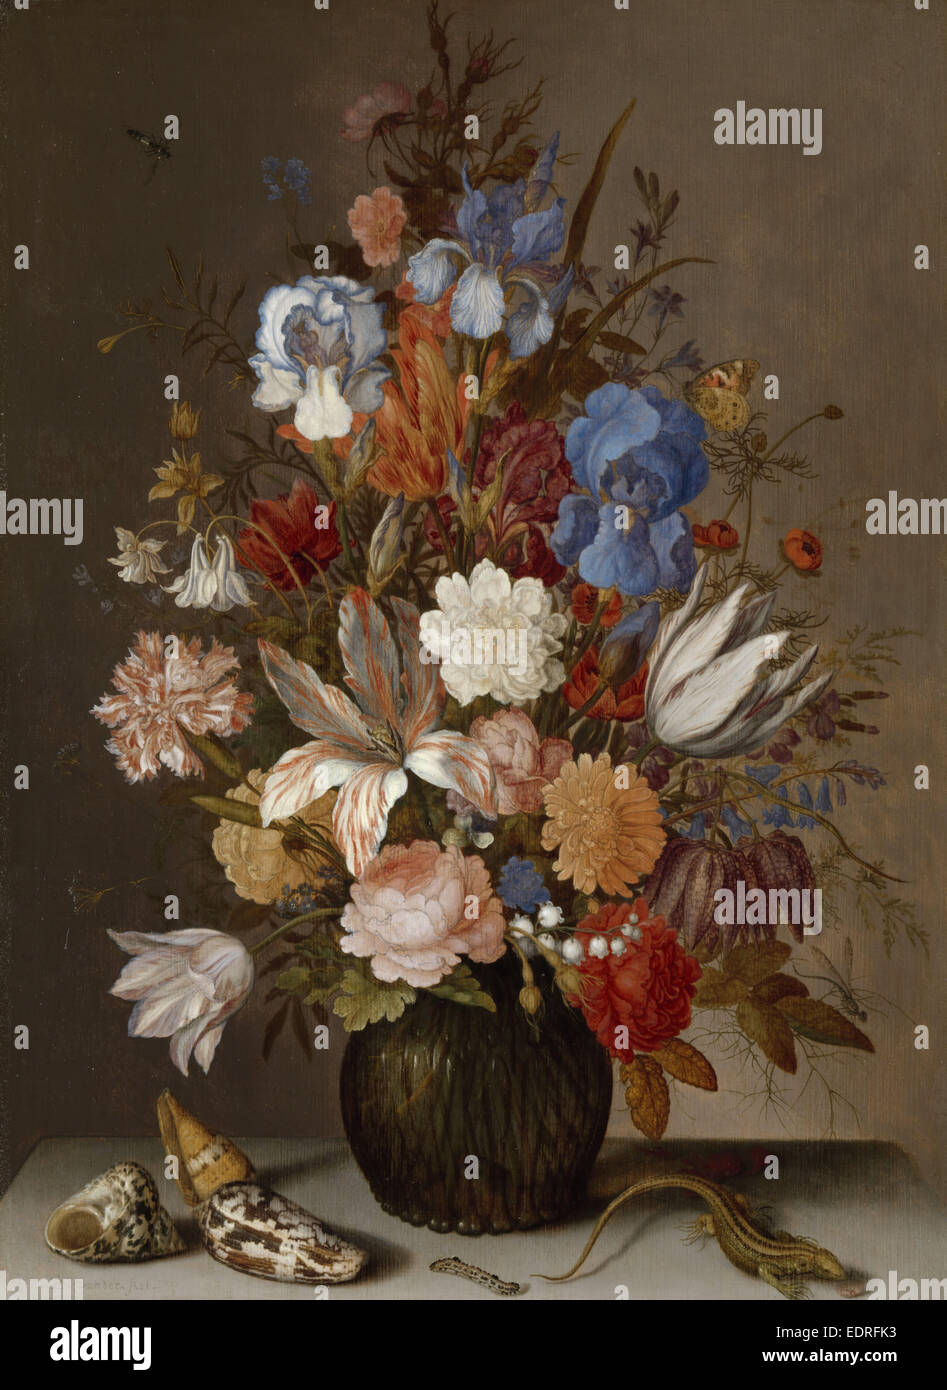 Still Life with Flowers, Balthasar van der Ast, c. 1625 - c. 1630 Stock Photo